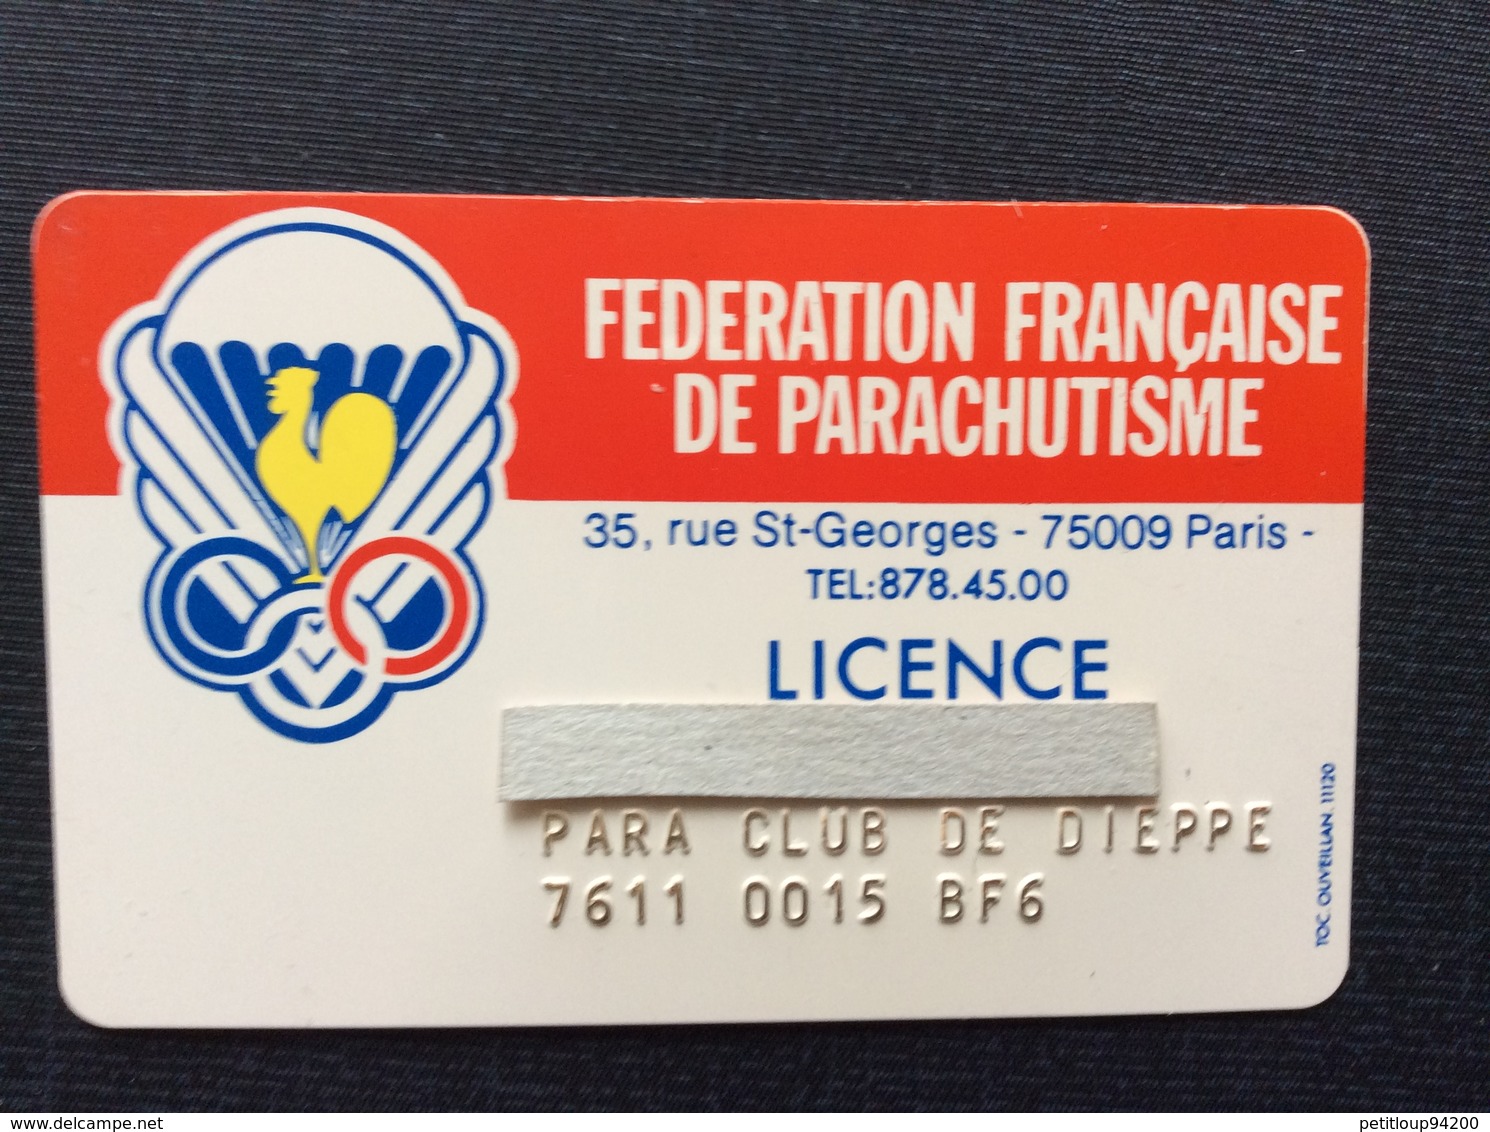 FEDERATION FRANÇAISE DE PARACHUTISME  Licence  PARA CLUB DE DIEPPE - Parachutisme